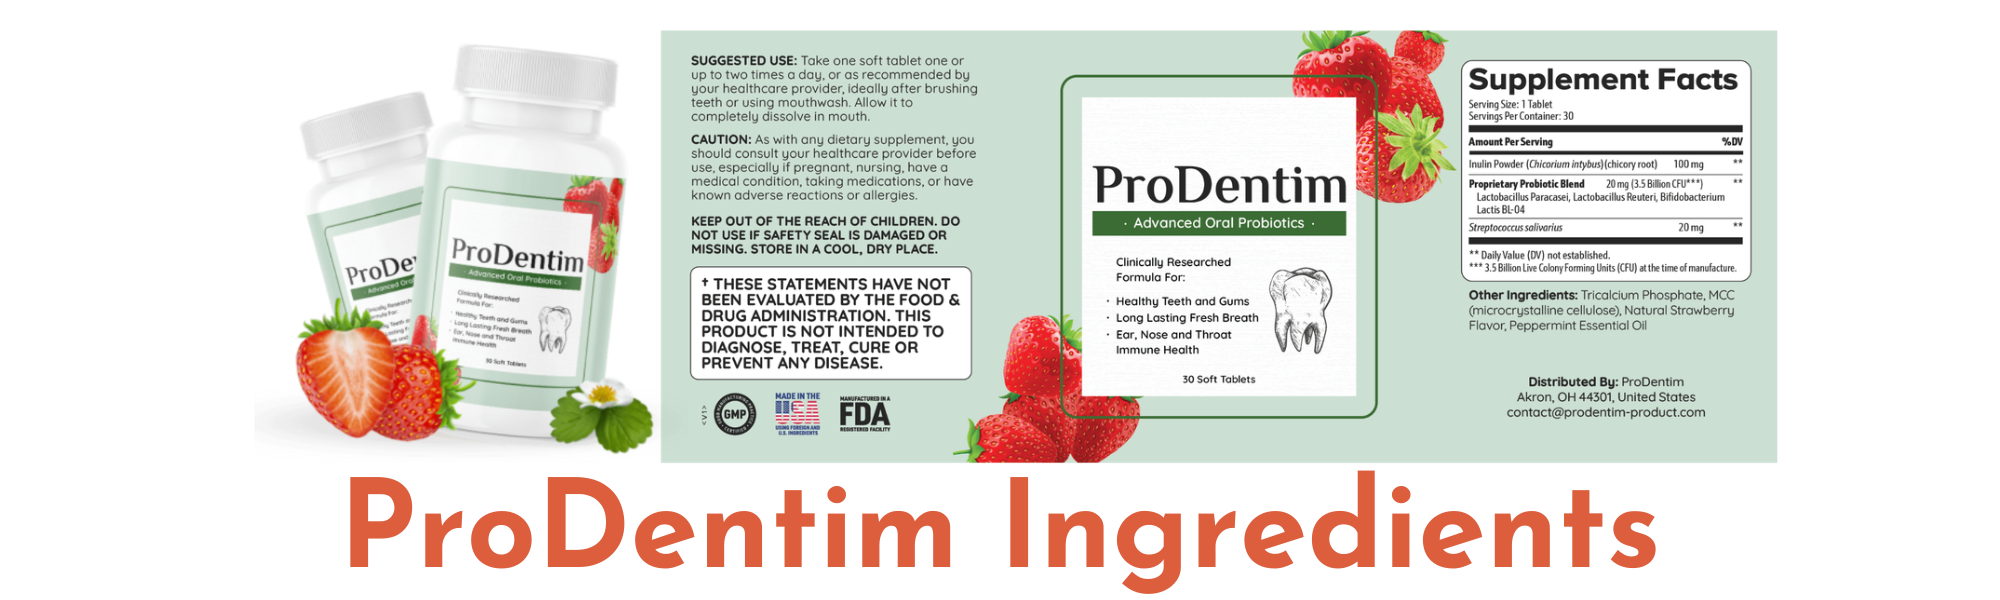 ProDentim Ingredients: ProDentim Ingredients List